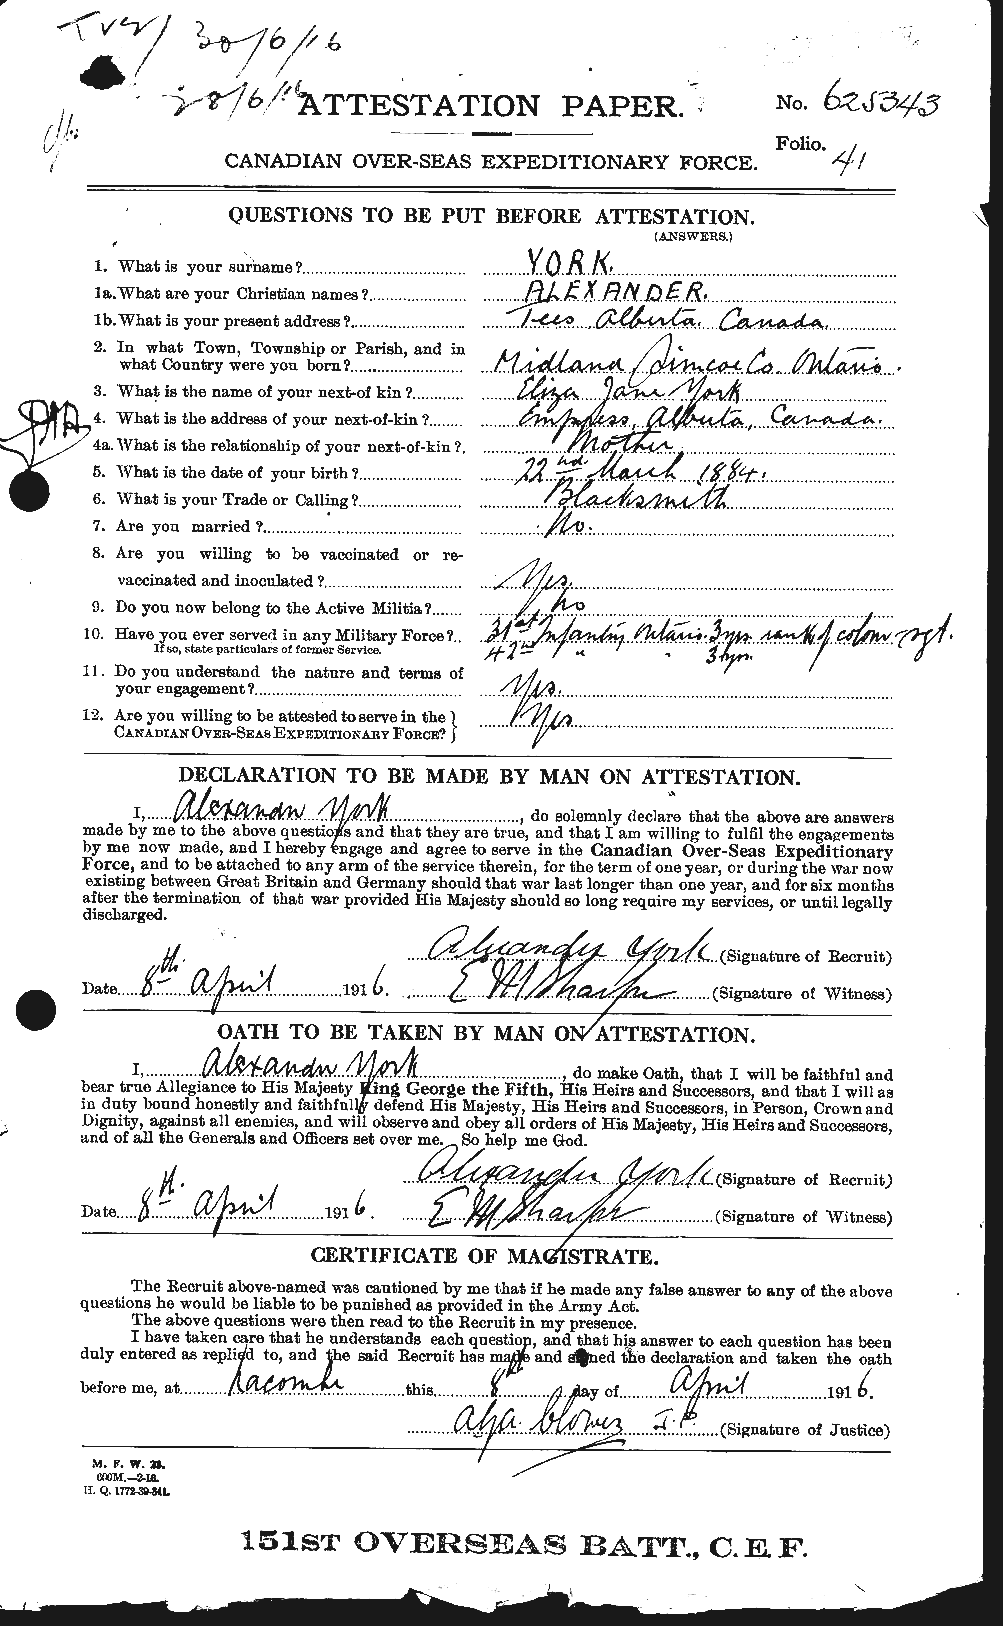 Dossiers du Personnel de la Première Guerre mondiale - CEC 688915a